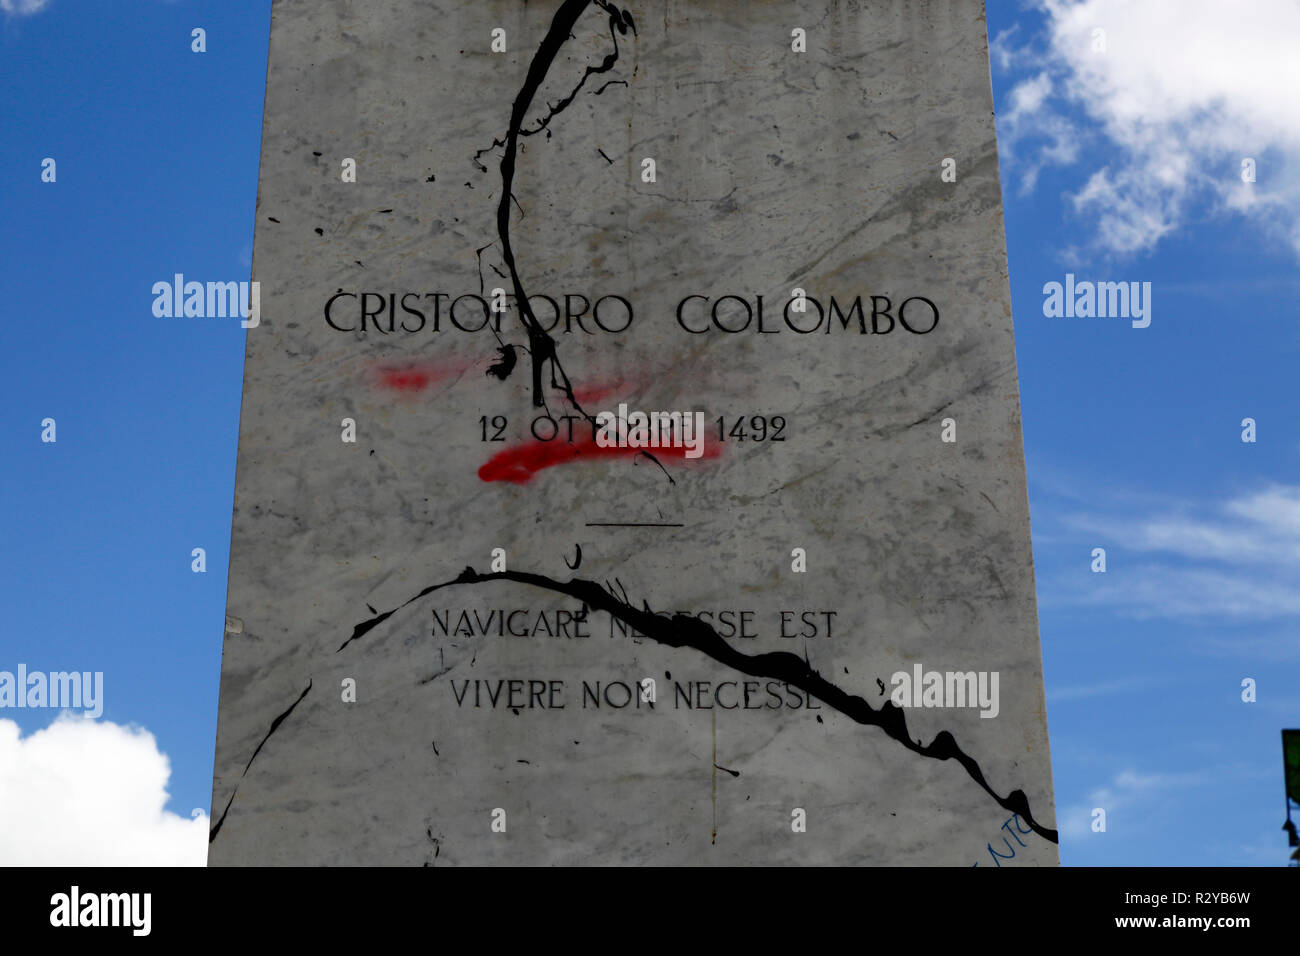 Dettaglio di vandalismo un monumento di Cristoforo Colombo in segno di protesta contro il trattamento delle popolazioni indigene dai colonizzatori europei, La Paz, Bolivia Foto Stock